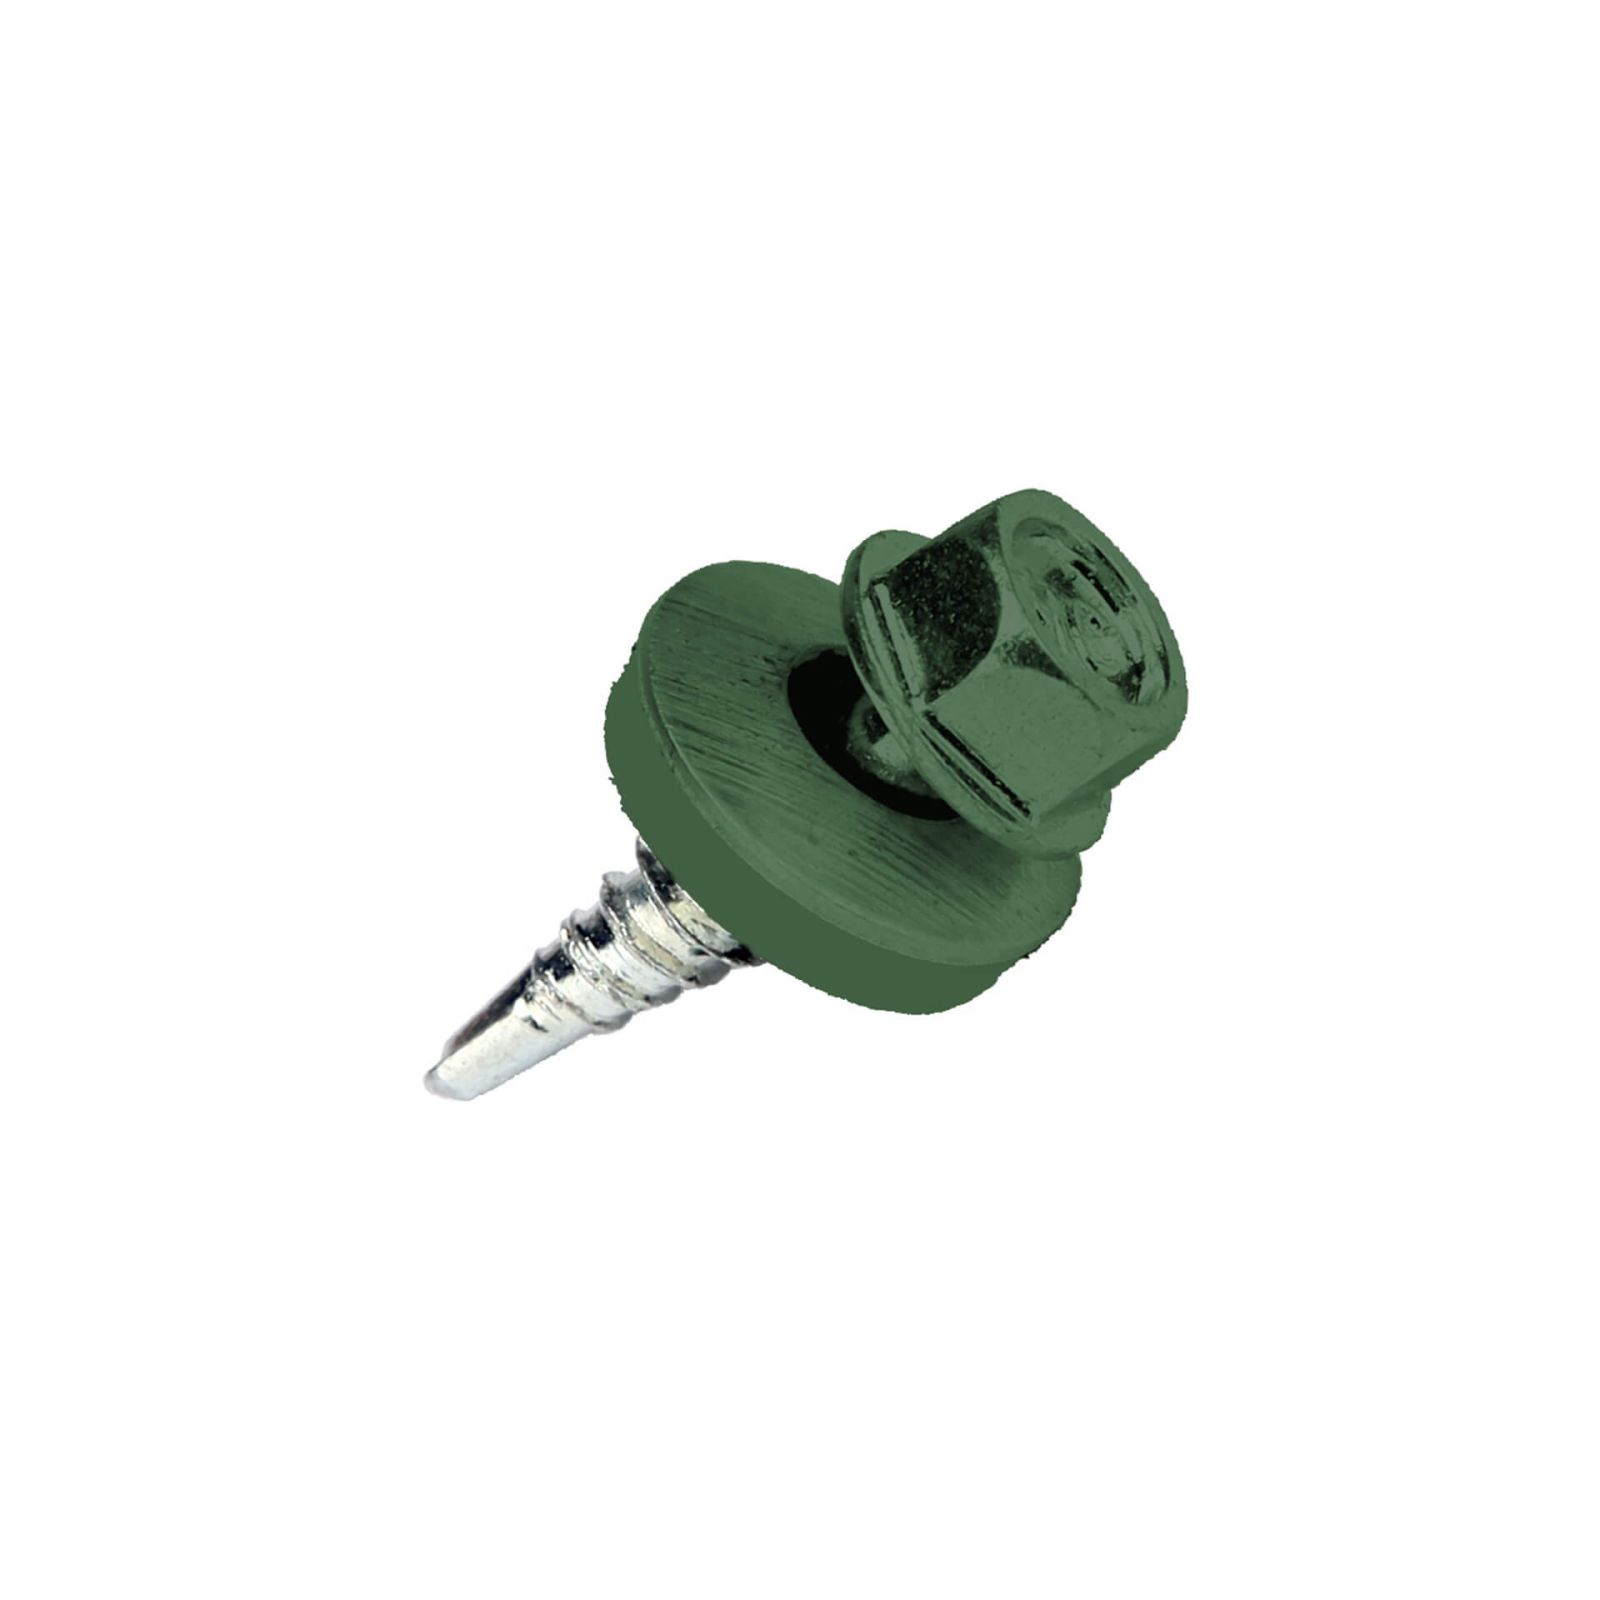 Verzinkte Schrauben | Für Überlappungen und Kantteile | 4,8 x 20 mm E14 | Moosgrün